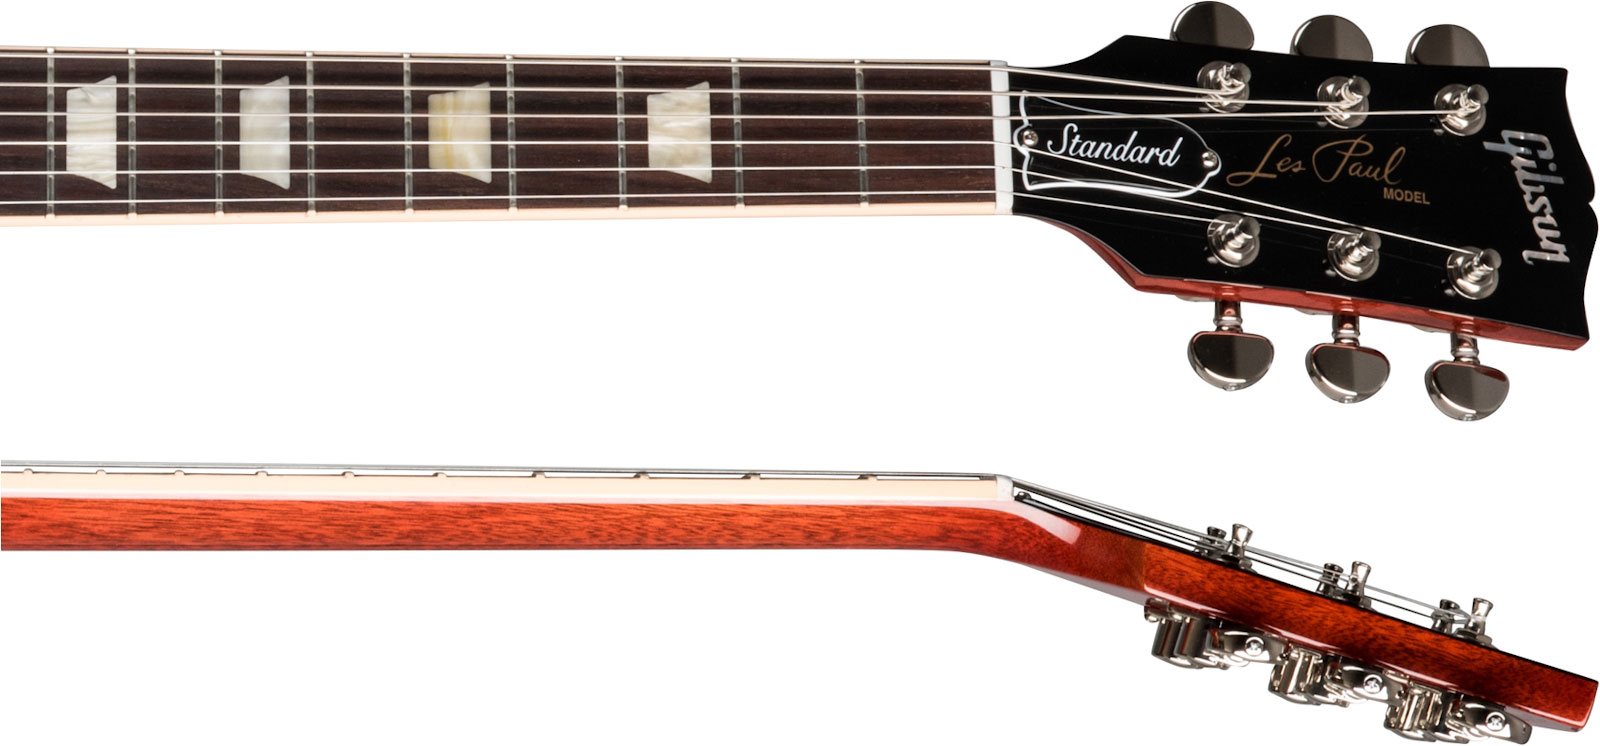 Gibson Les Paul Standard 60s 2h Ht Rw - Iced Tea - Enkel gesneden elektrische gitaar - Variation 3